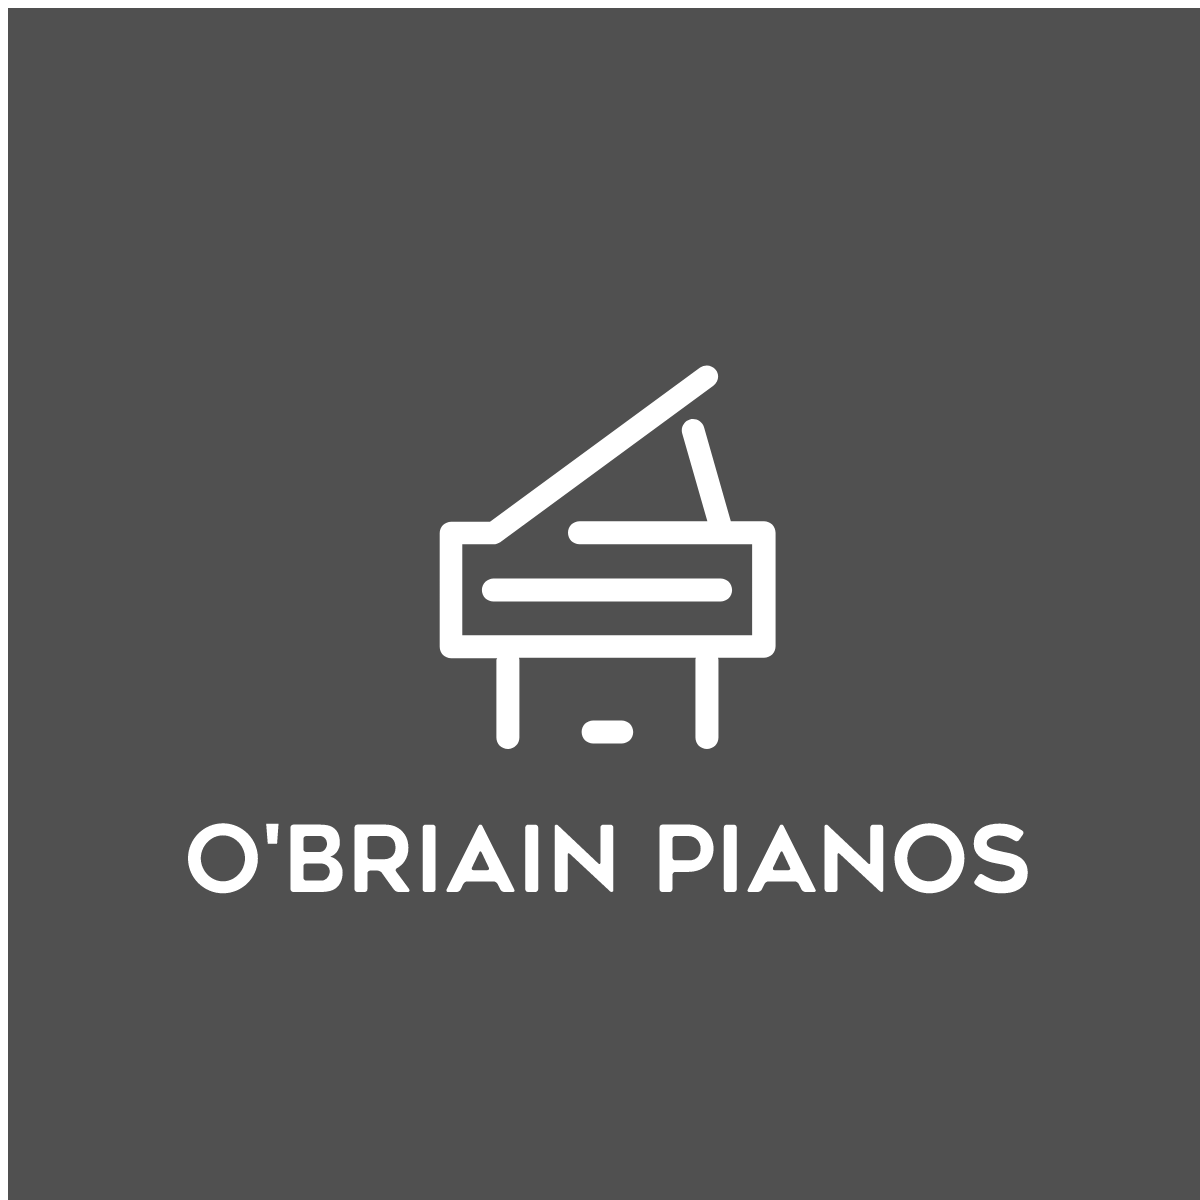 O'Briain Pianos - Low Cost Pianos - Affordable Upright & Grand Pianos - Piano Lessons Dublin-O'Briain Pianos